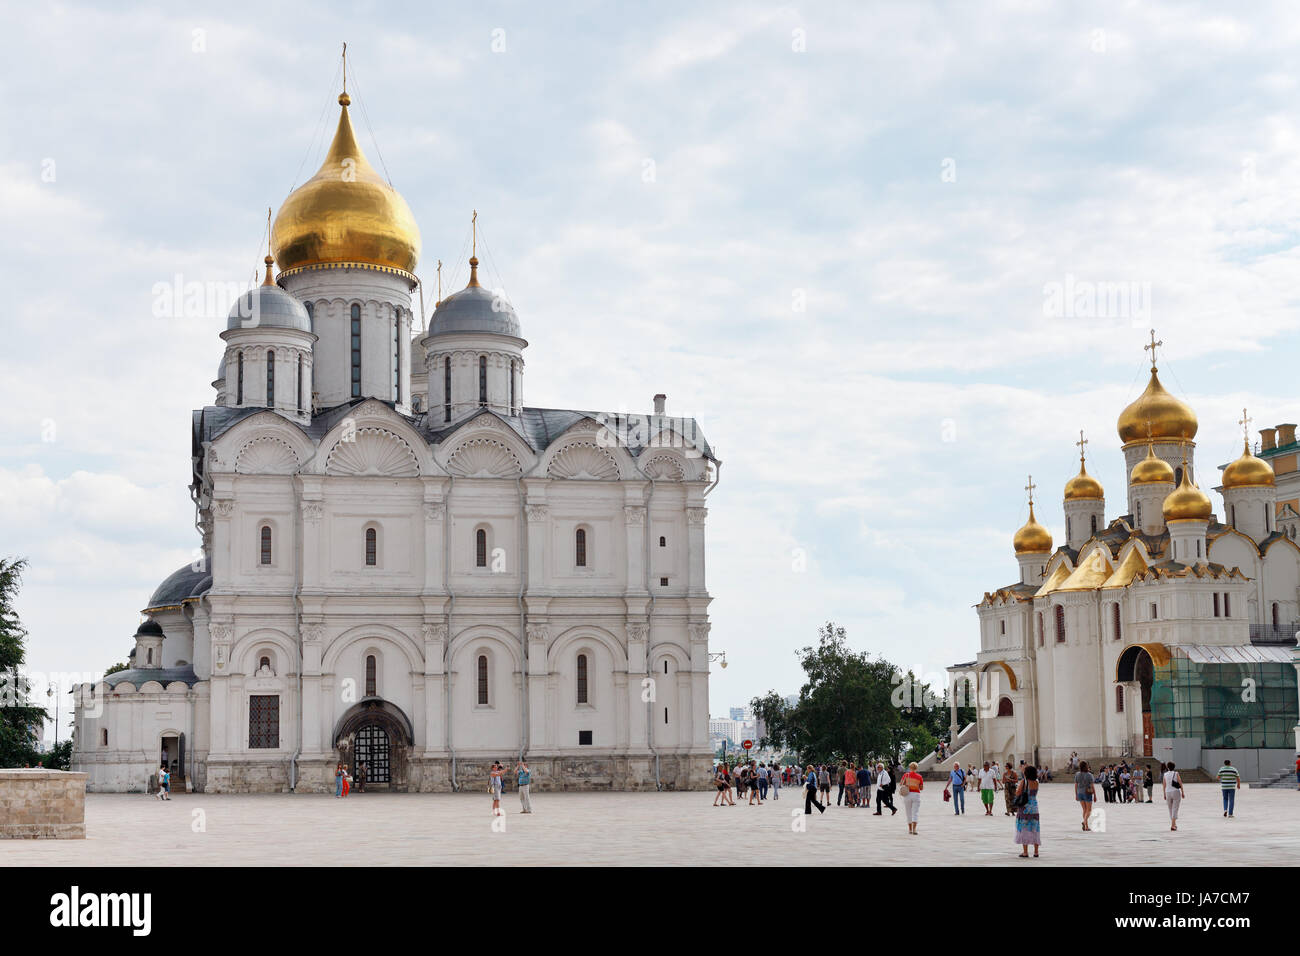 Moskau, Russland - Juli 12: Cathedral Square des Moskauer Kreml in Russland am 12. Juli 2013. Platz hat im XIV. Jahrhundert mit dem Bau der ersten Kathedralen architektonische Zentrum der Kreml entwickelt. Stockfoto